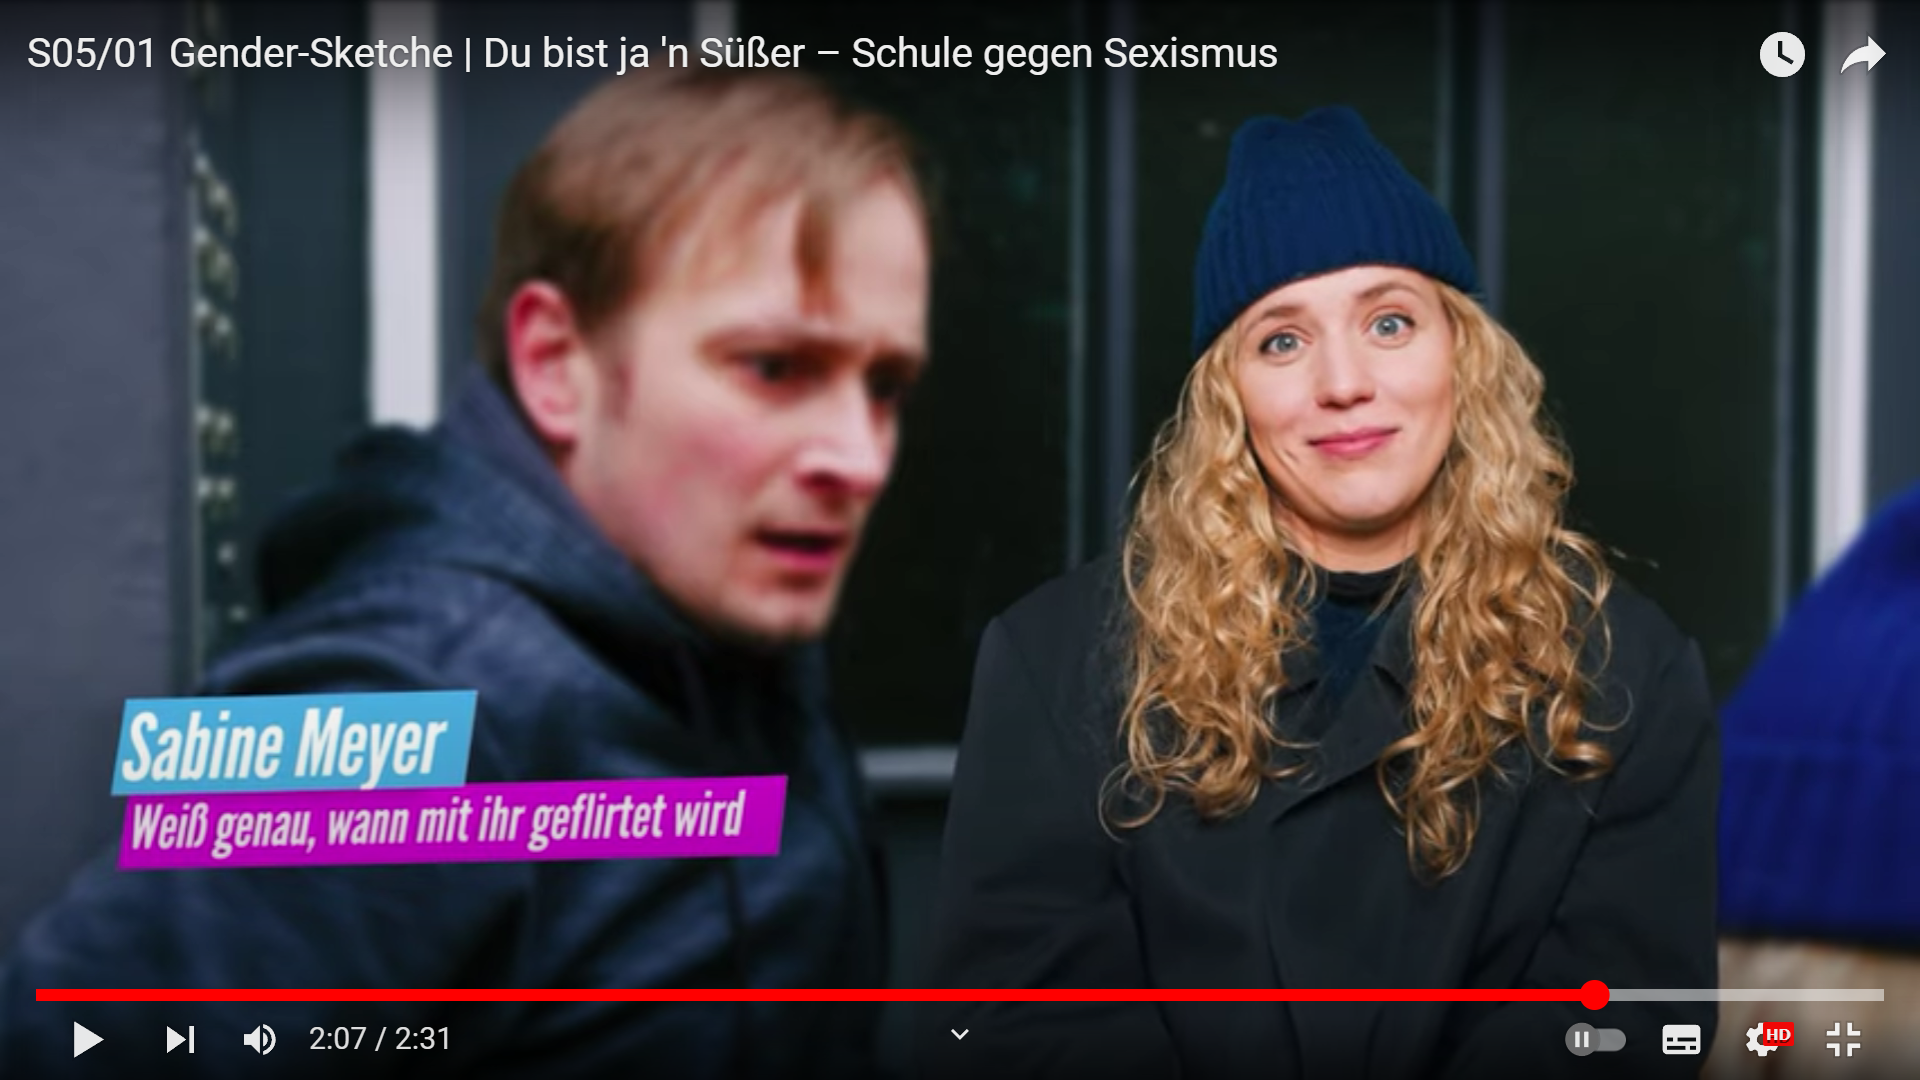 Standbild aus der Staffel fünf, Episode eins der Gender Sketche. Zeigt eine blonde Frau namens Sabine Meyer im Interview. Ihr Untertitel besagt, Weiß genau, wann mit ihr geflirtet wird.